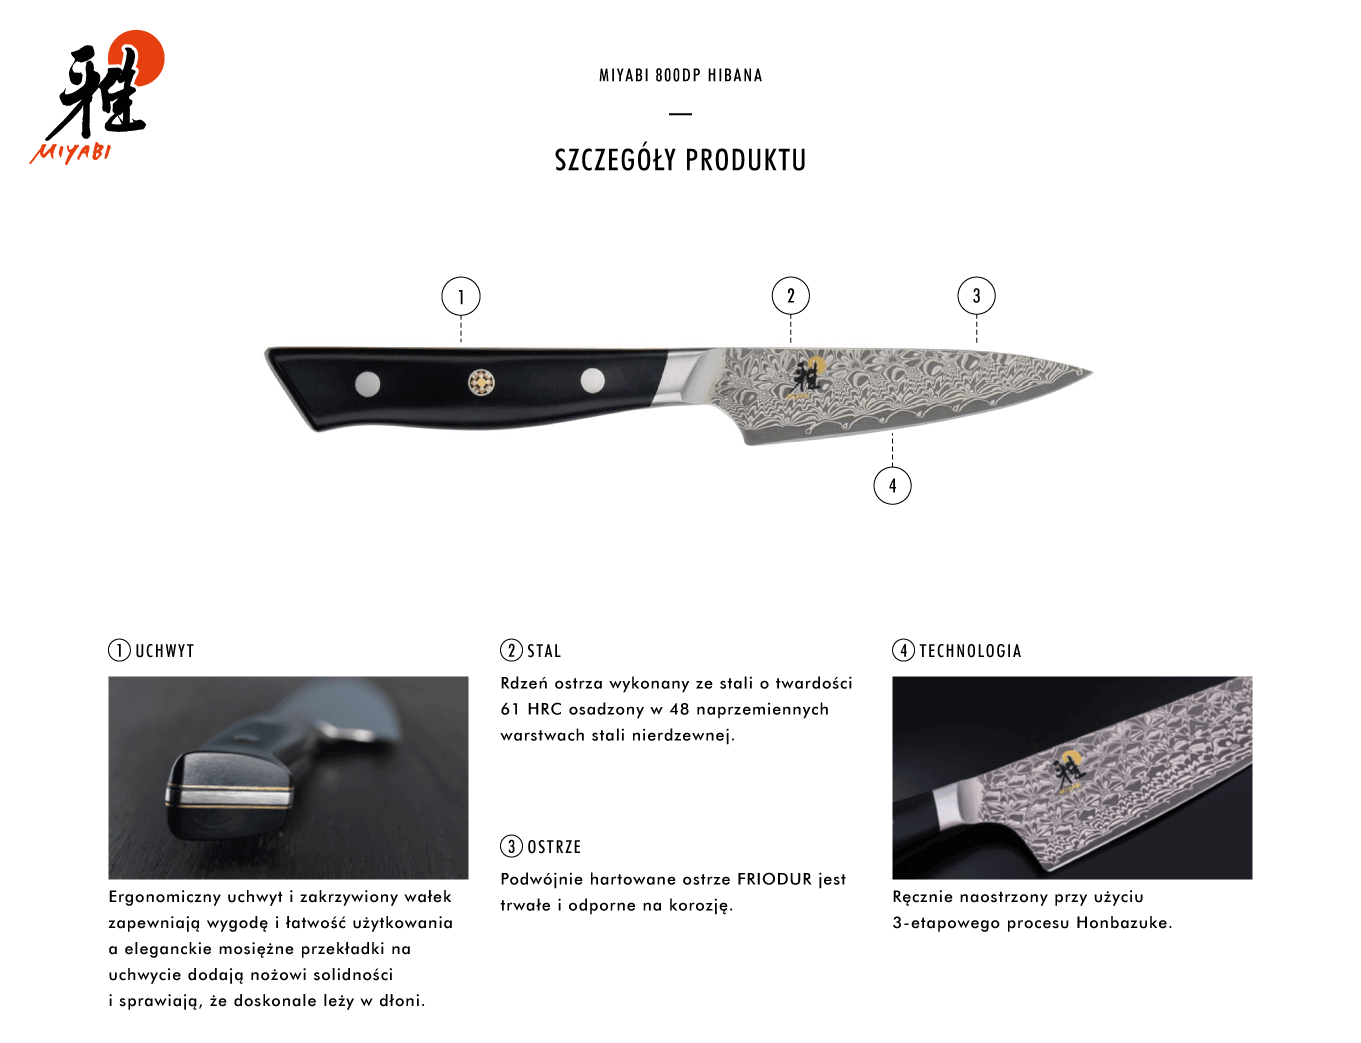 Dlaczego warto kupić nóż Shotoh Miyabi 800DP?